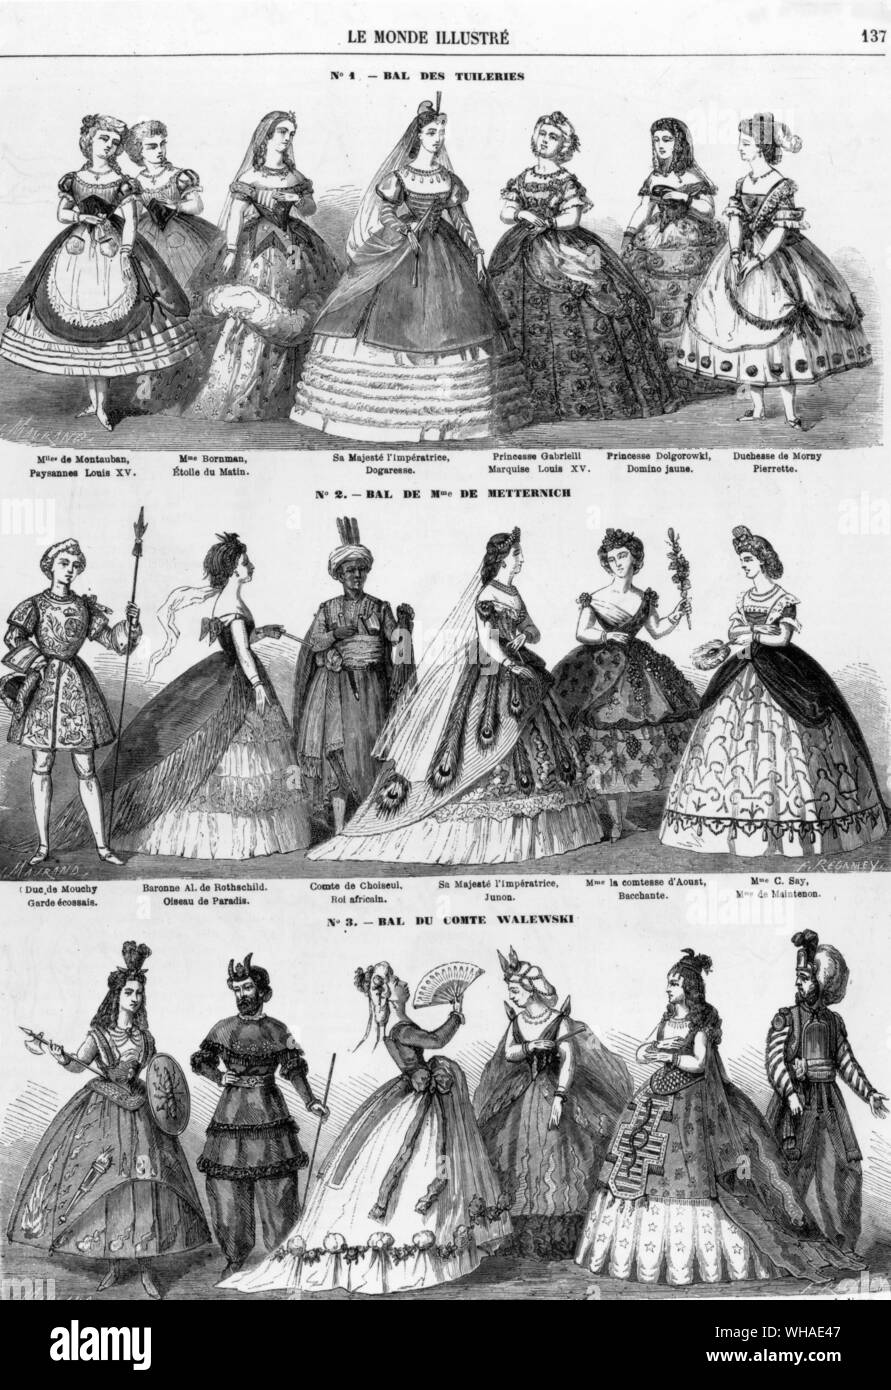 Le Monde illustre 28 février 1863. Fancy dress costumes portés par l'Impératrice Eugénie et d'autres parties de la région de Paris en 1863 Banque D'Images